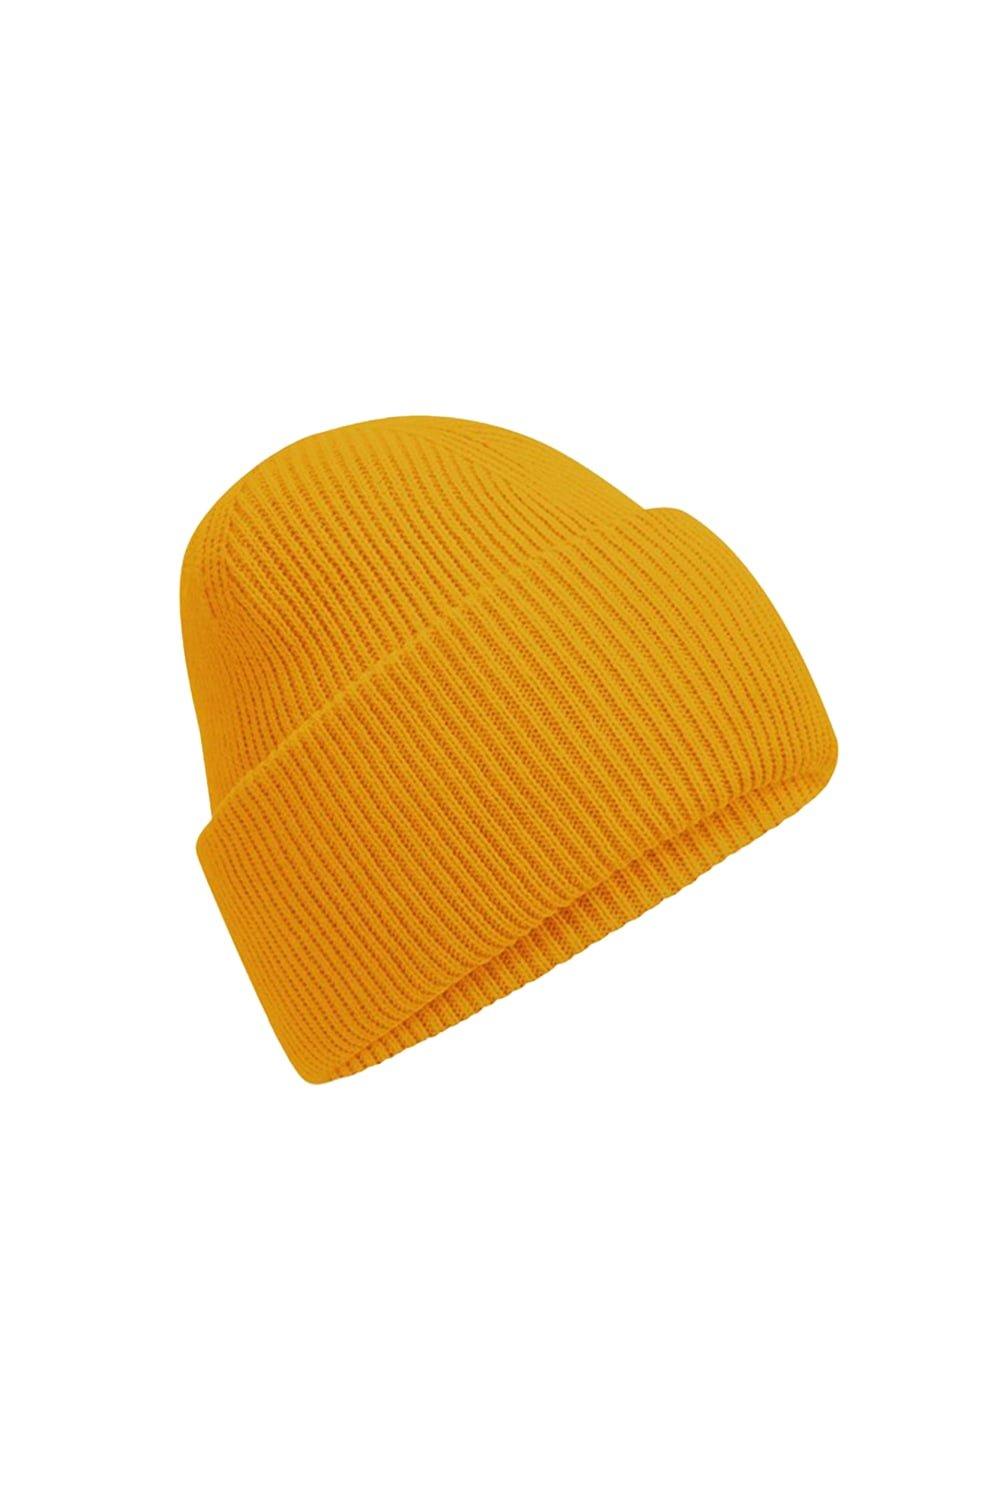 цена Классическая шапка с глубокими манжетами Beechfield, желтый